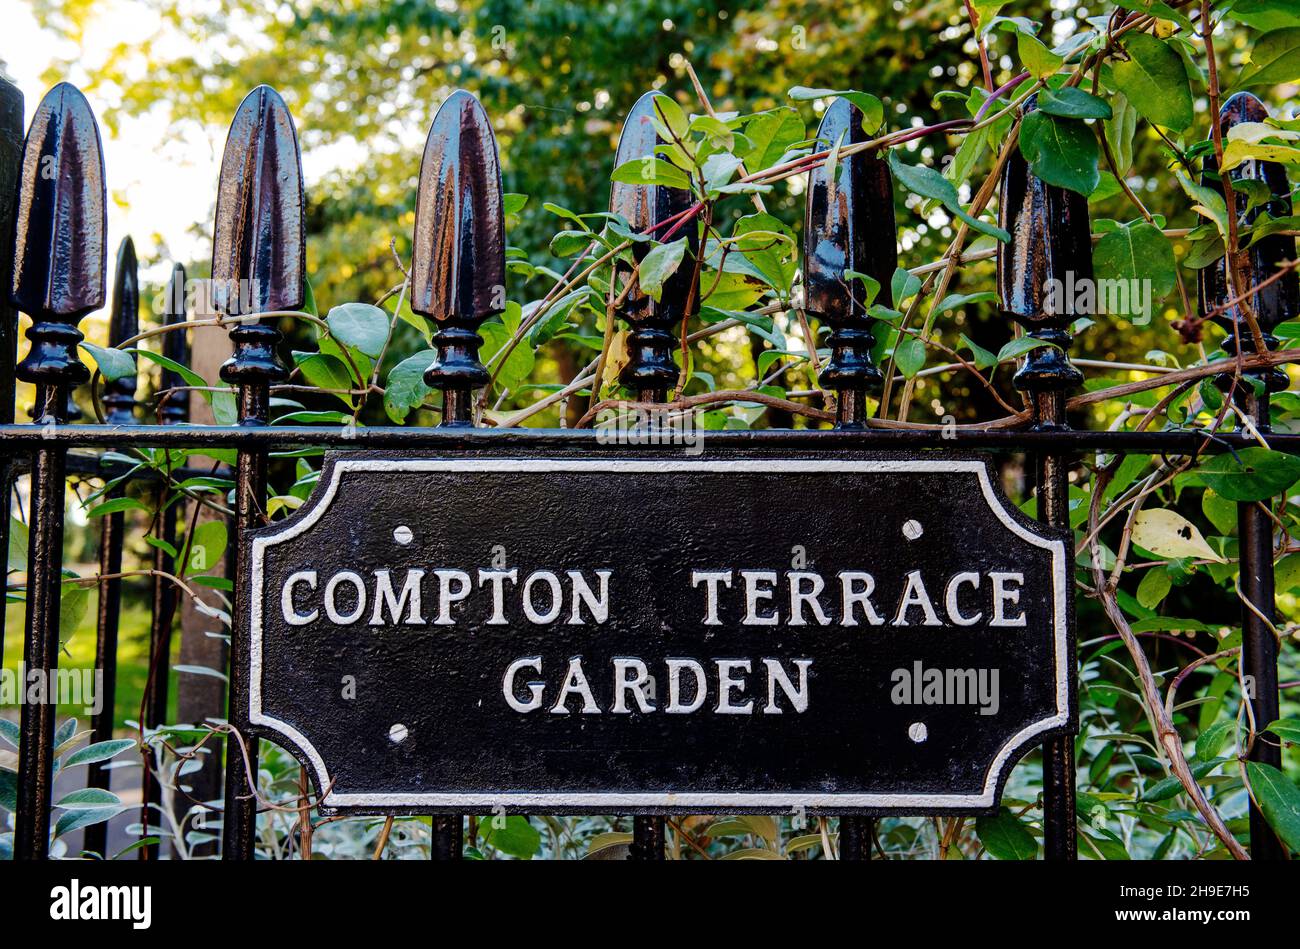 Compton Terrace Garden Schild auf schmiedeeisernem Geländer, London Borough of Islington, England, Großbritannien Stockfoto